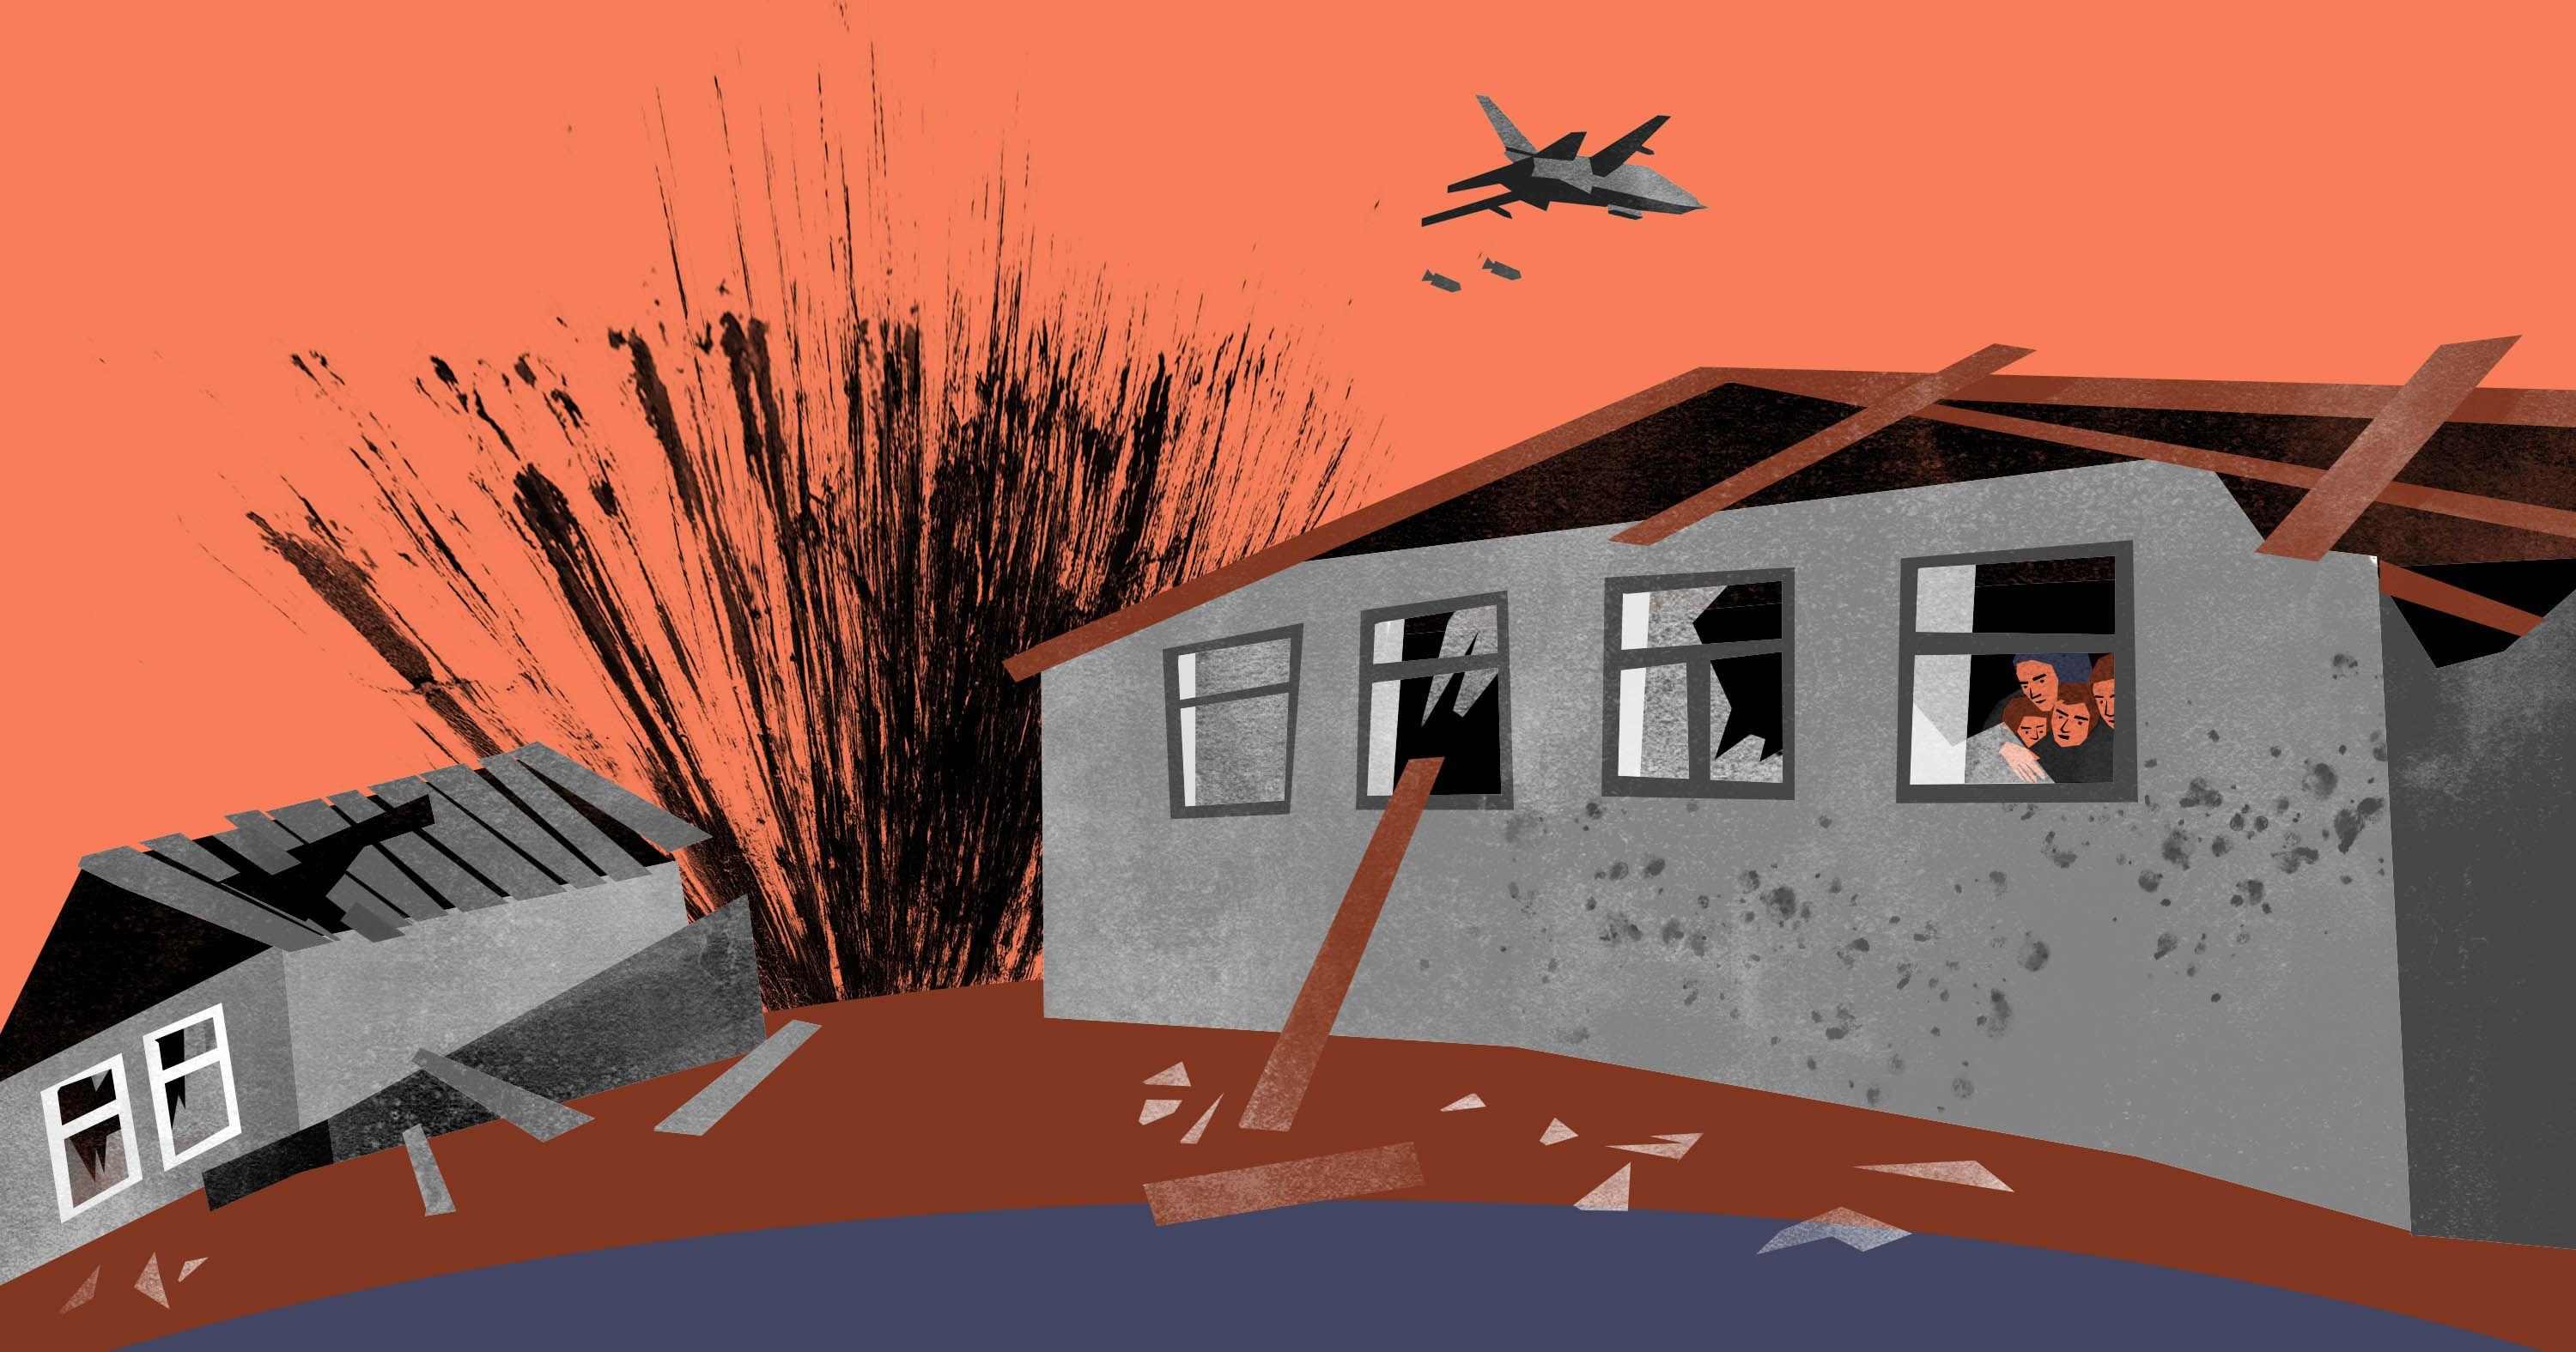 Refugees illustration bombarding